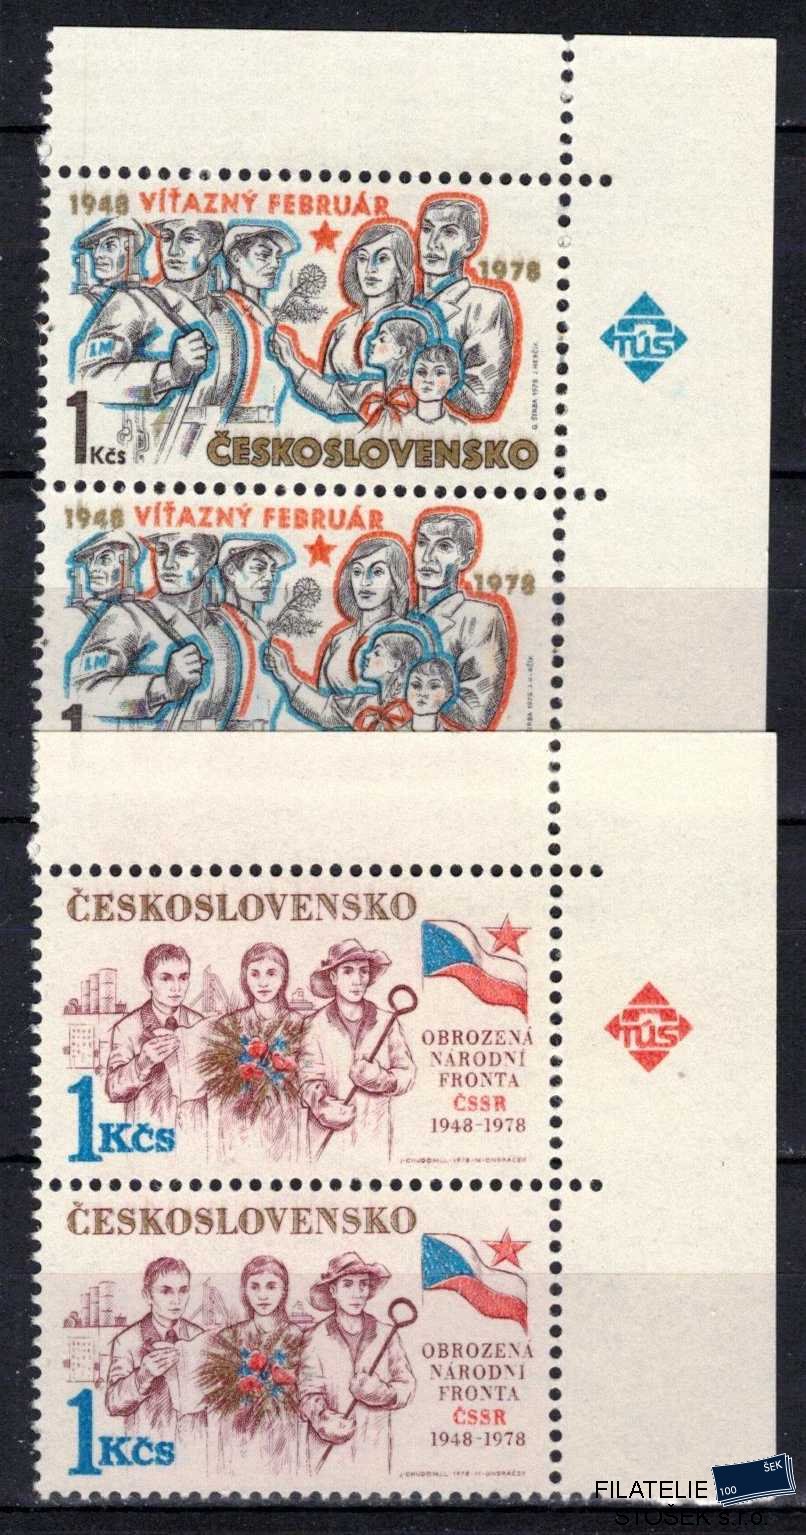 Československo známky 2295-6 Dvoupásky rohové značka TUS